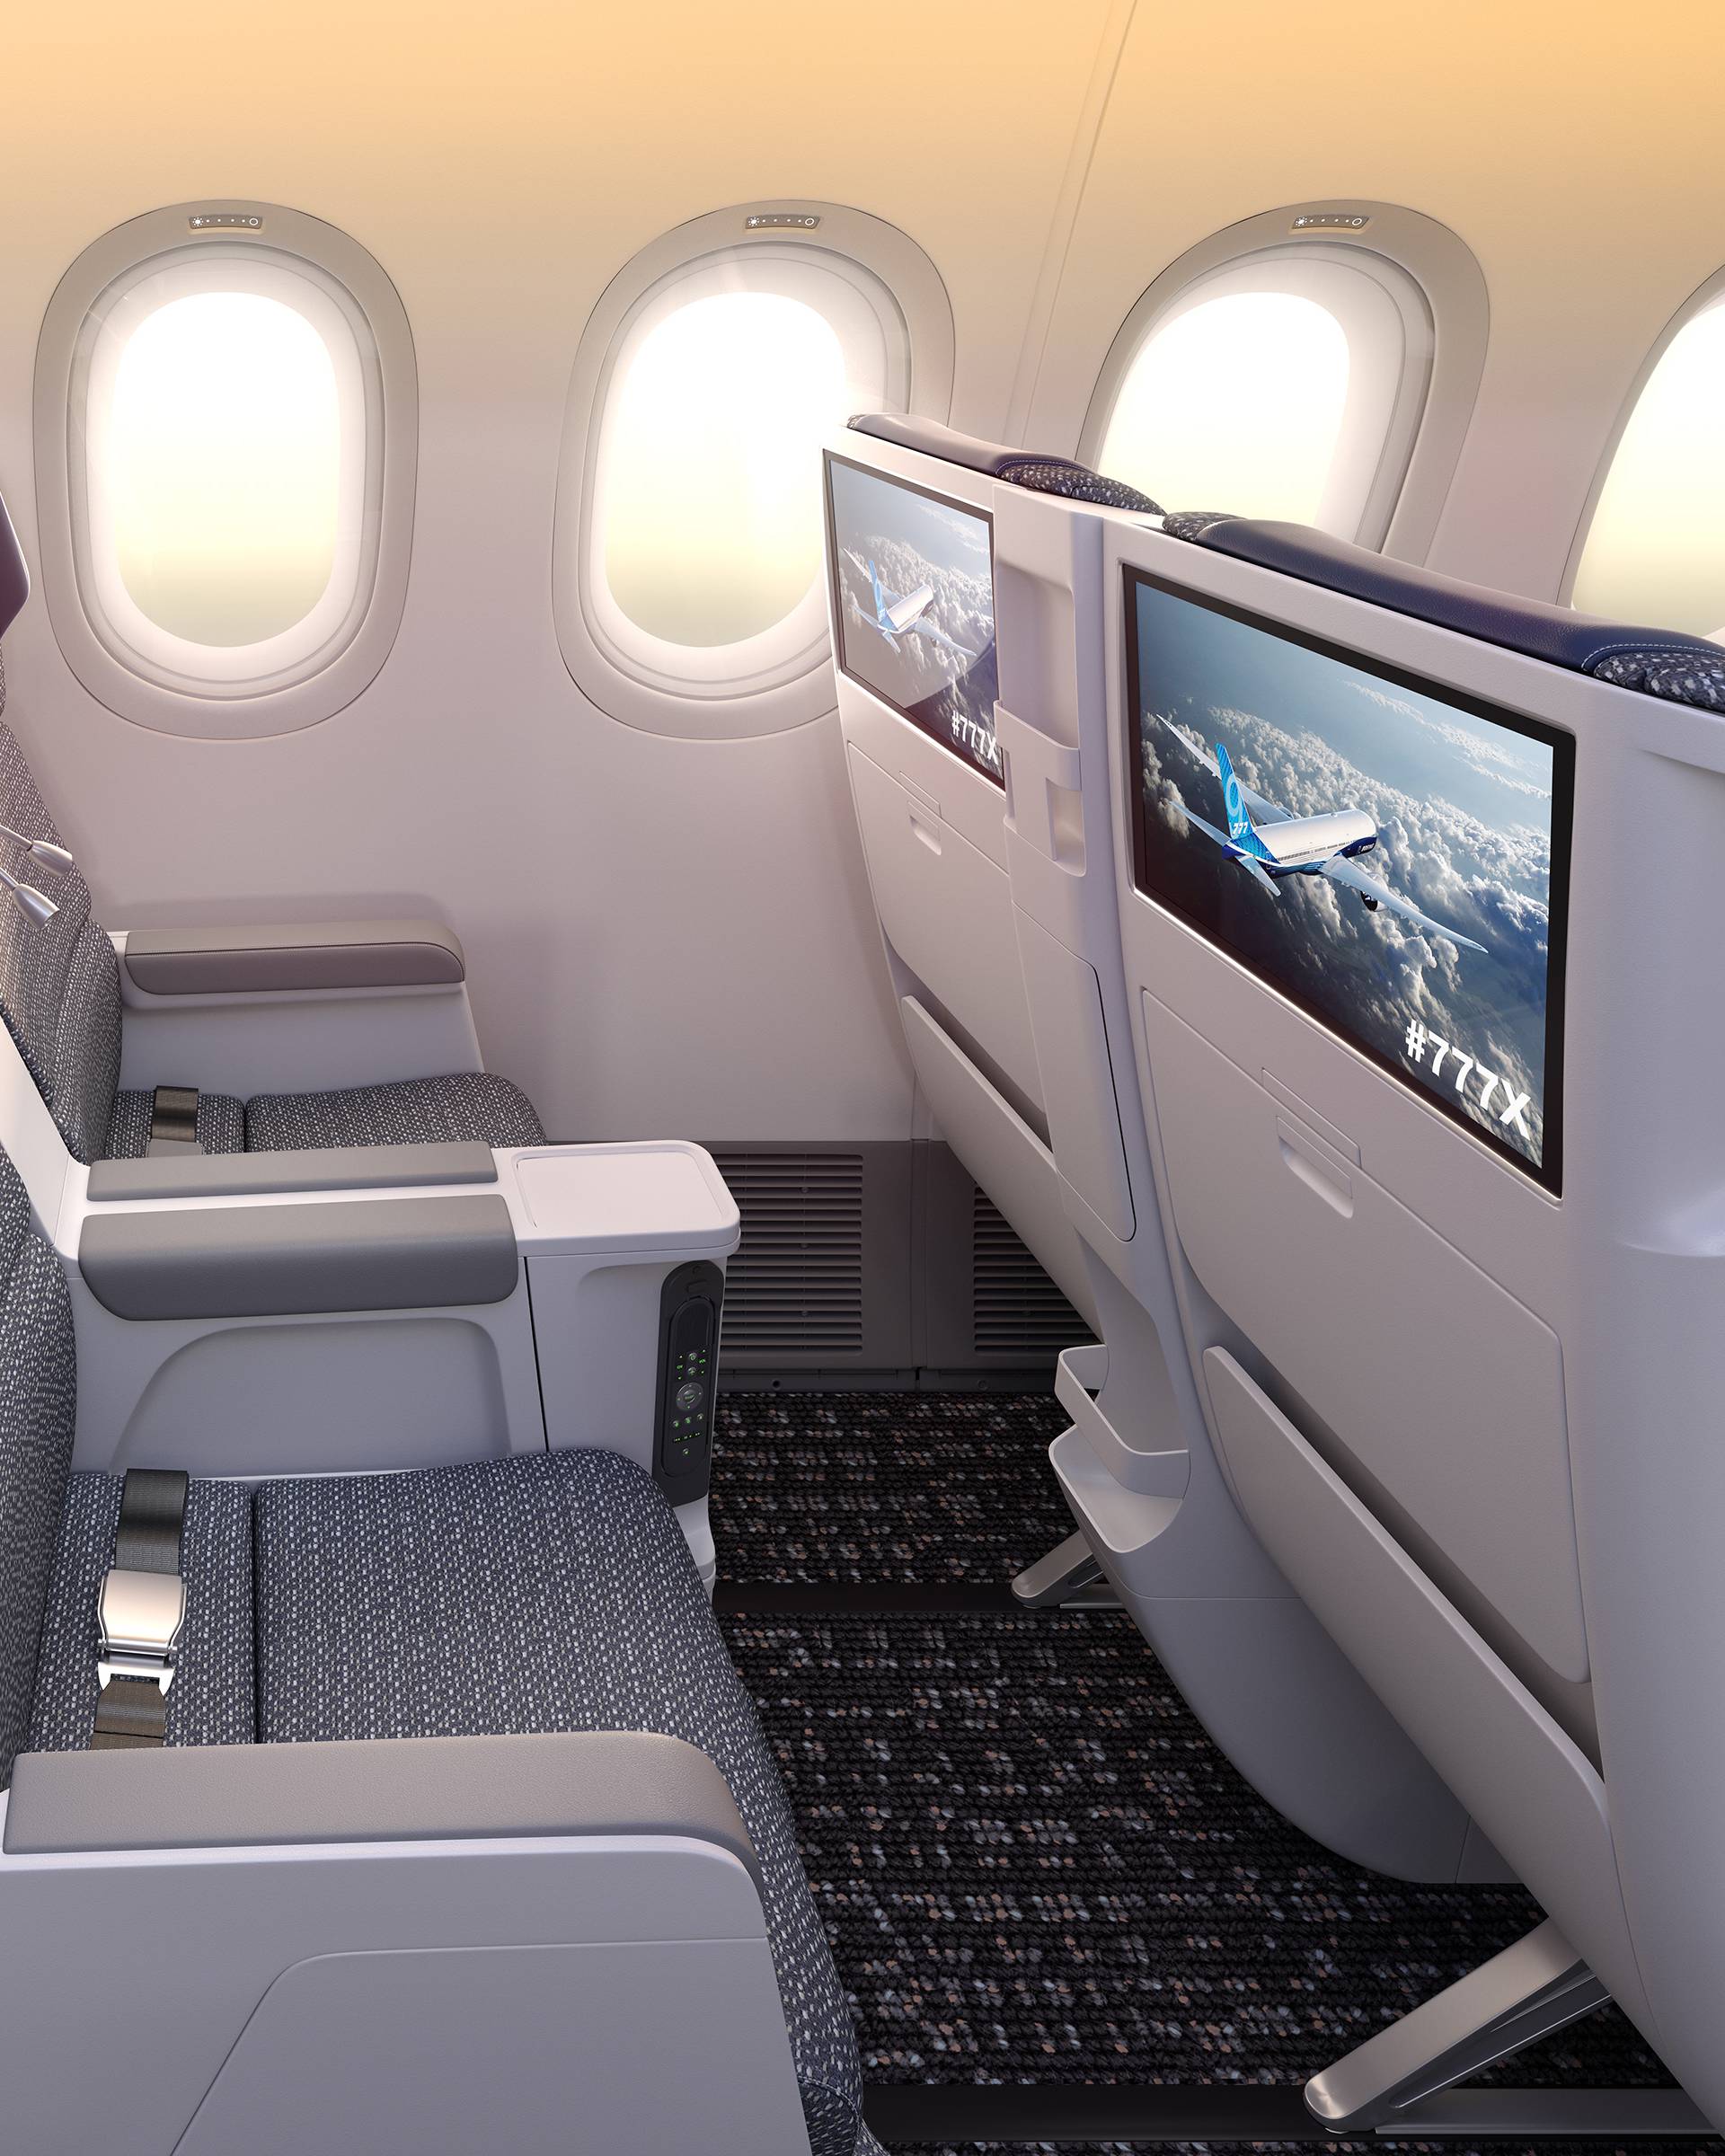 Boeingov novi 777X će ovog tjedna krenuti na pokusni let